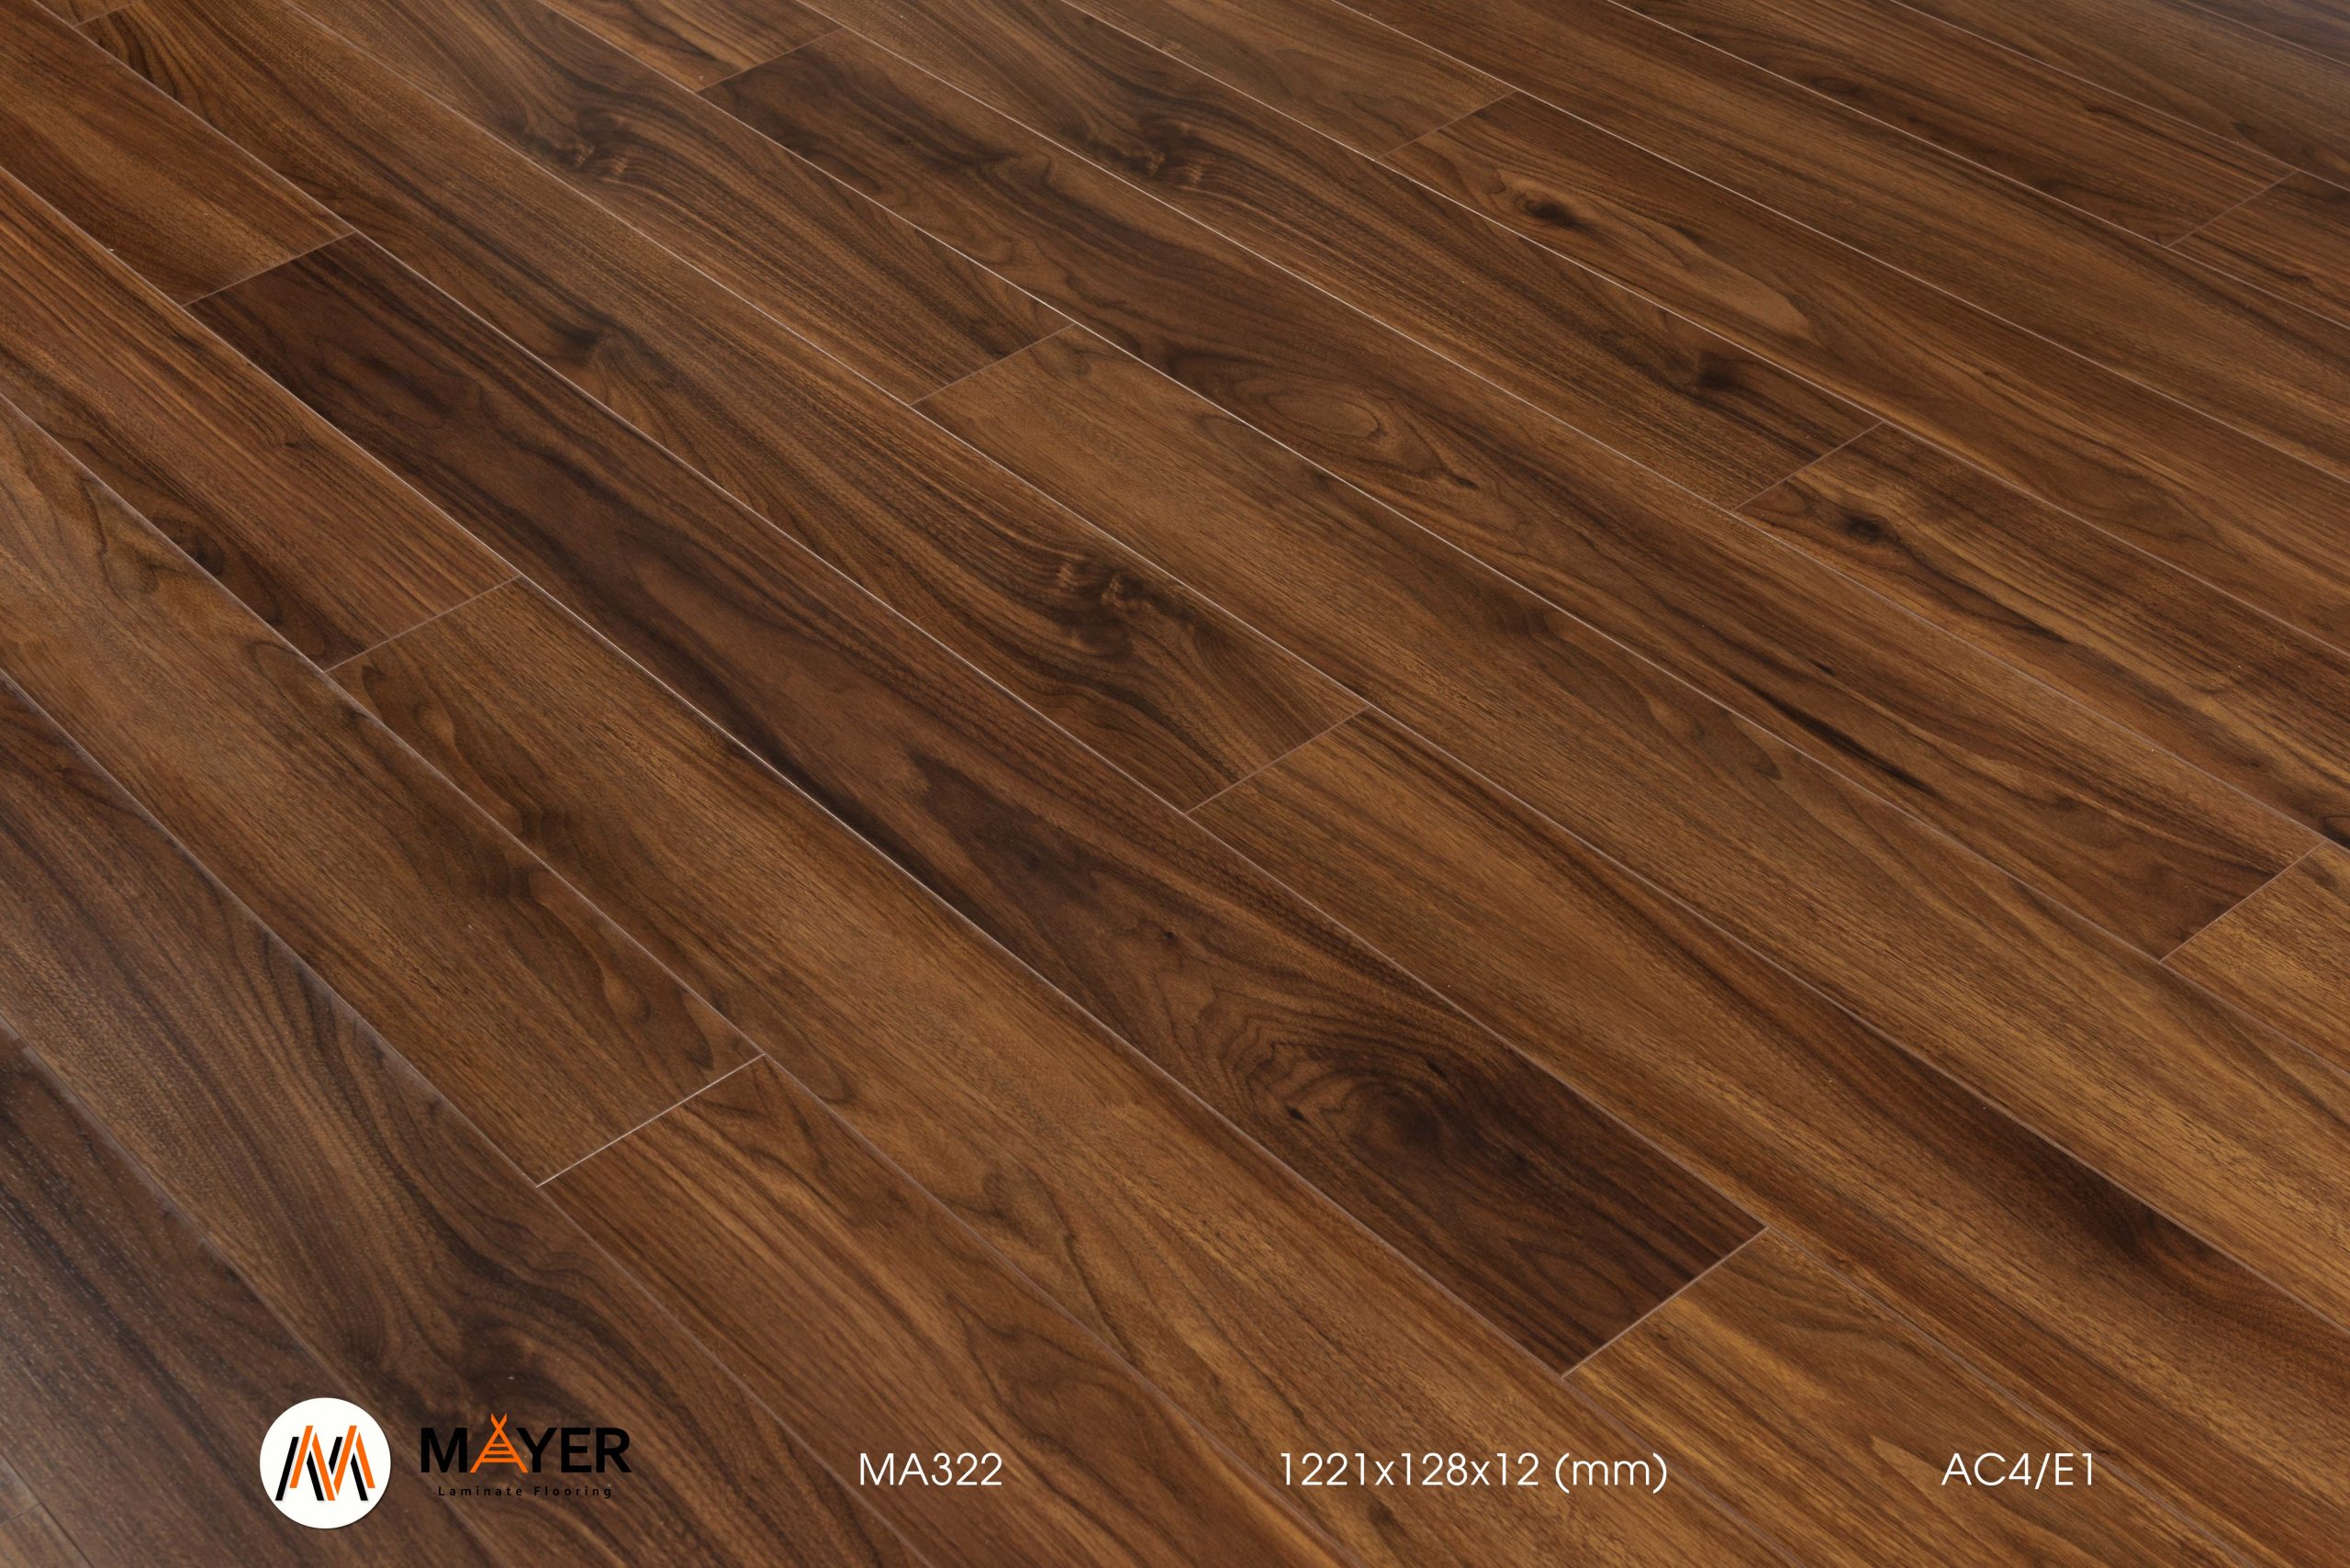 Sàn gỗ Mayer là thương hiệu sàn gỗ HDF xuất xứ Indonesia